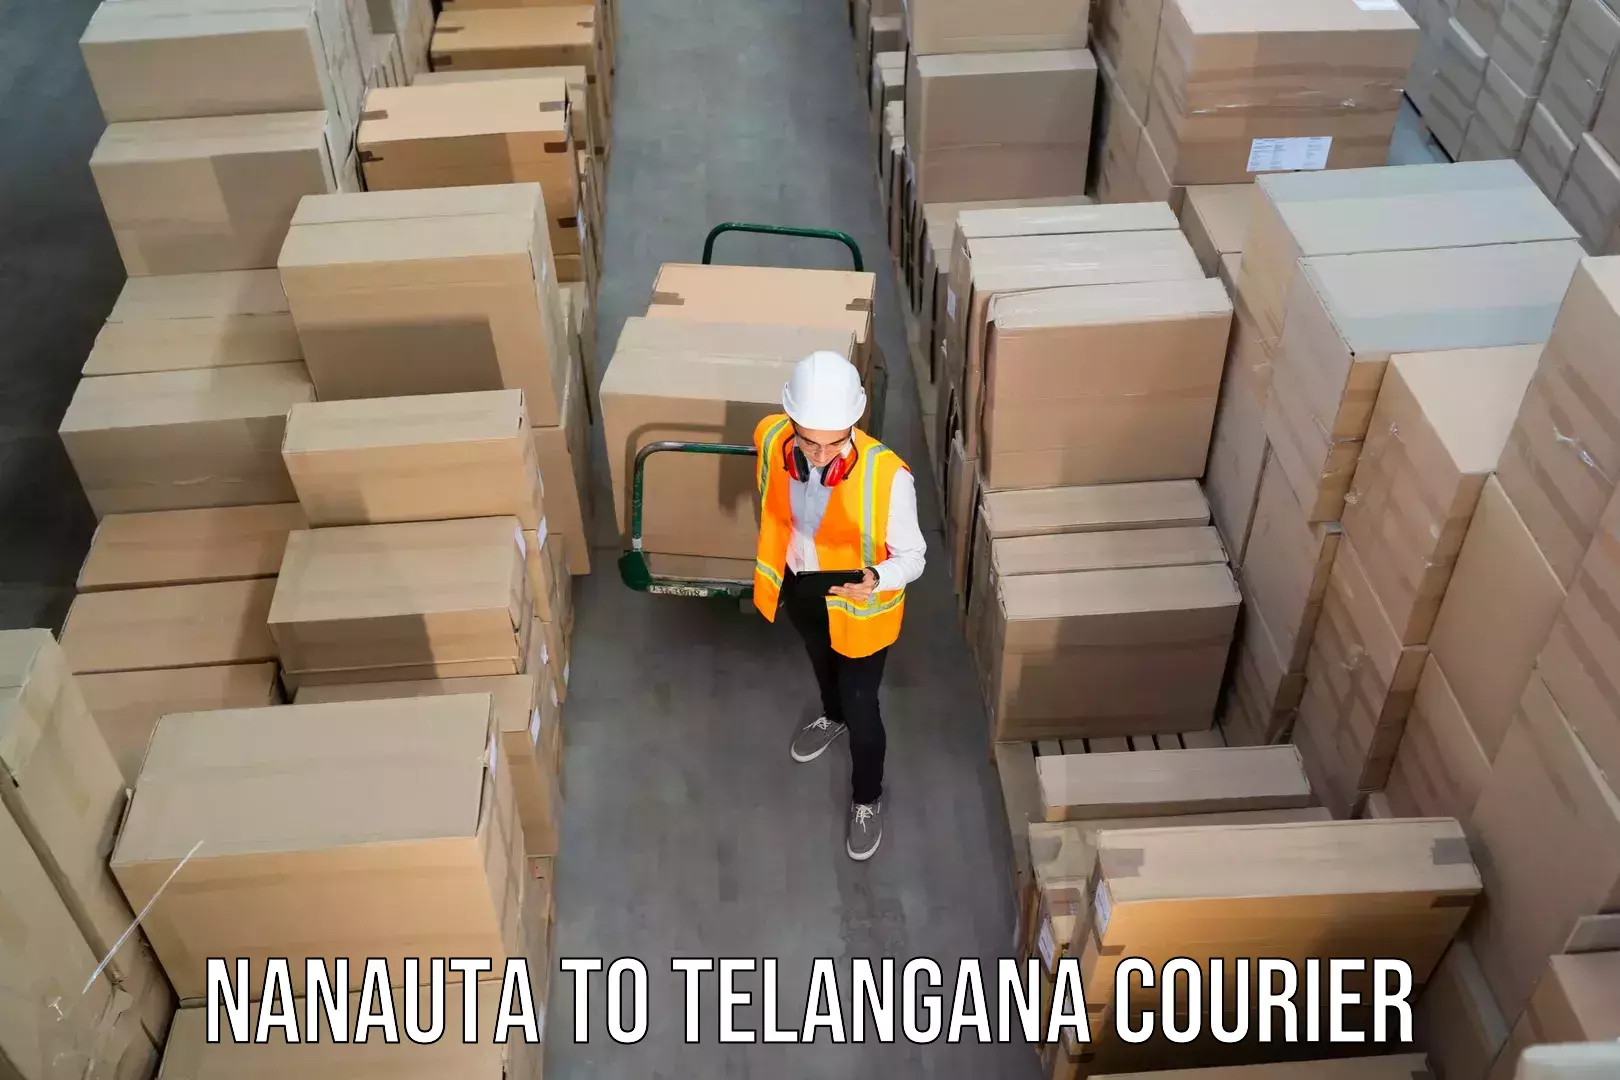 Professional courier handling Nanauta to Yacharam